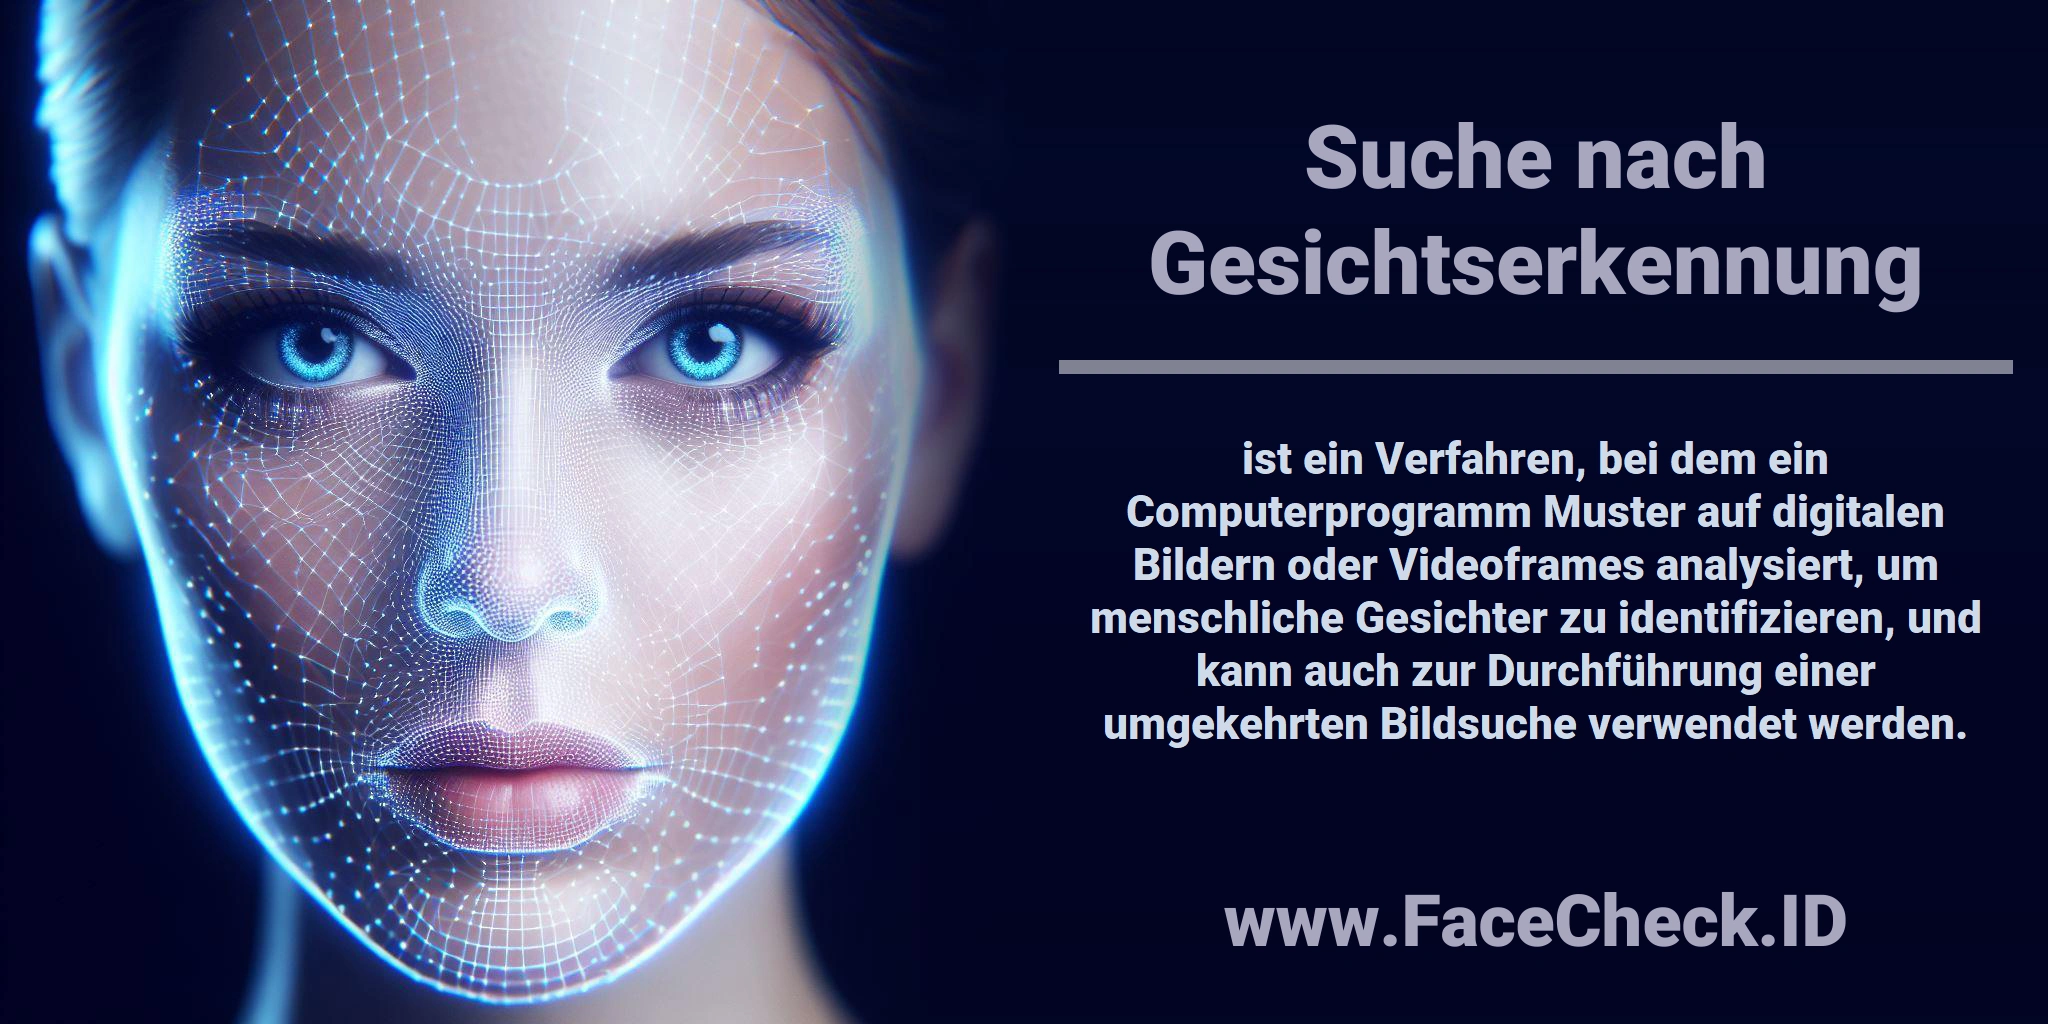 <b>Suche nach Gesichtserkennung</b> ist ein Verfahren, bei dem ein Computerprogramm Muster auf digitalen Bildern oder Videoframes analysiert, um menschliche Gesichter zu identifizieren, und kann auch zur Durchführung einer umgekehrten Bildsuche verwendet werden.